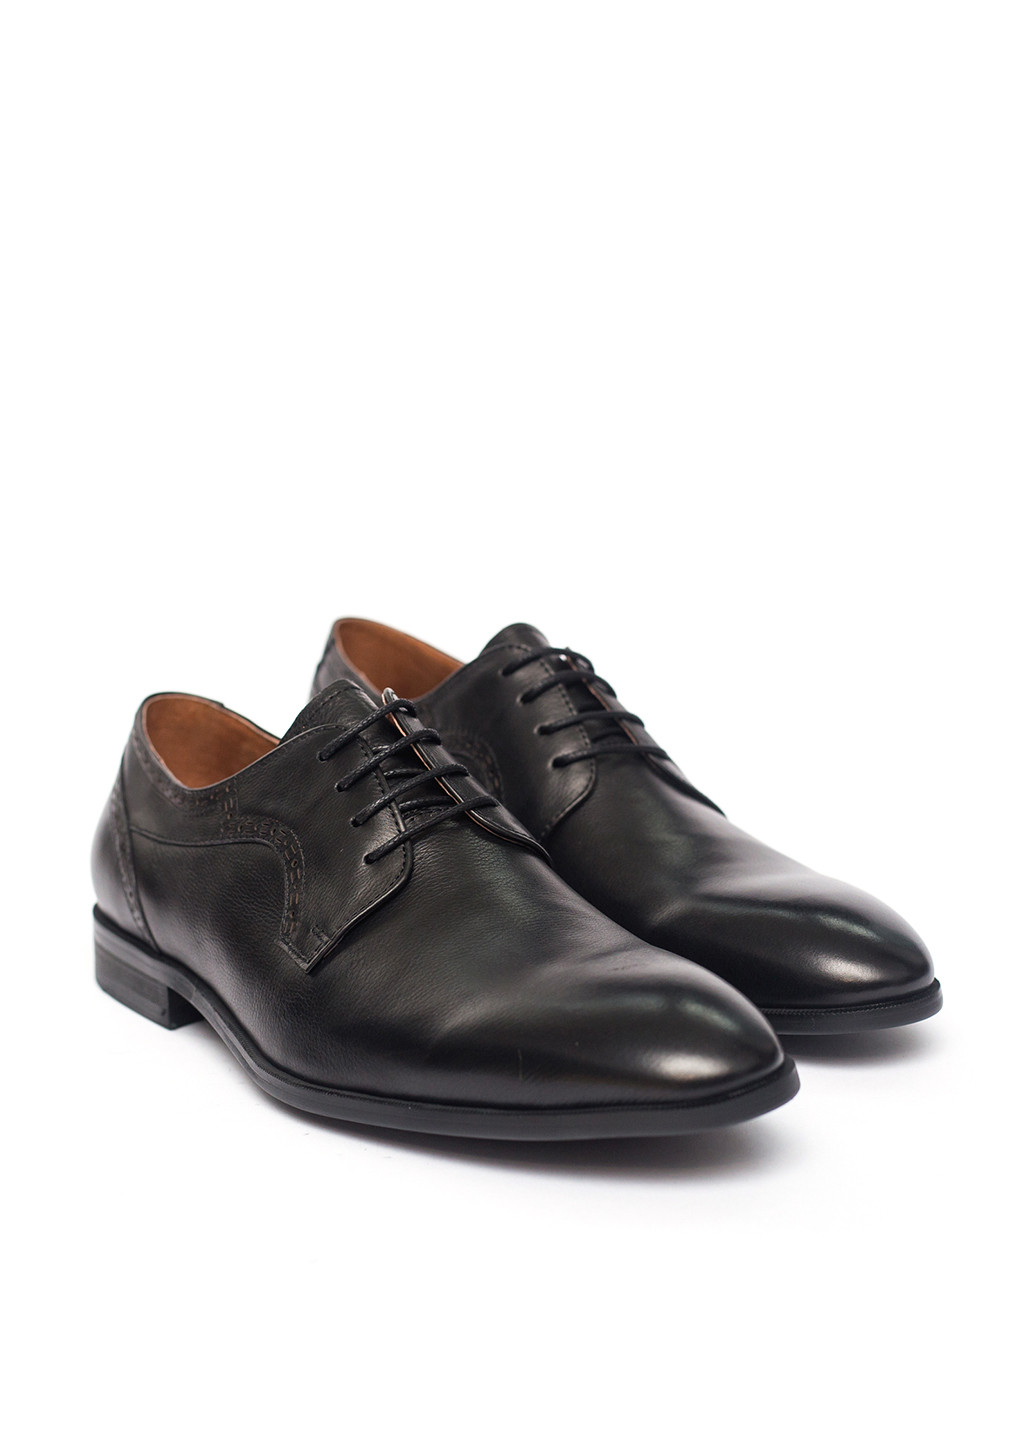 Черные классические туфли Lido Marinozzi на шнурках